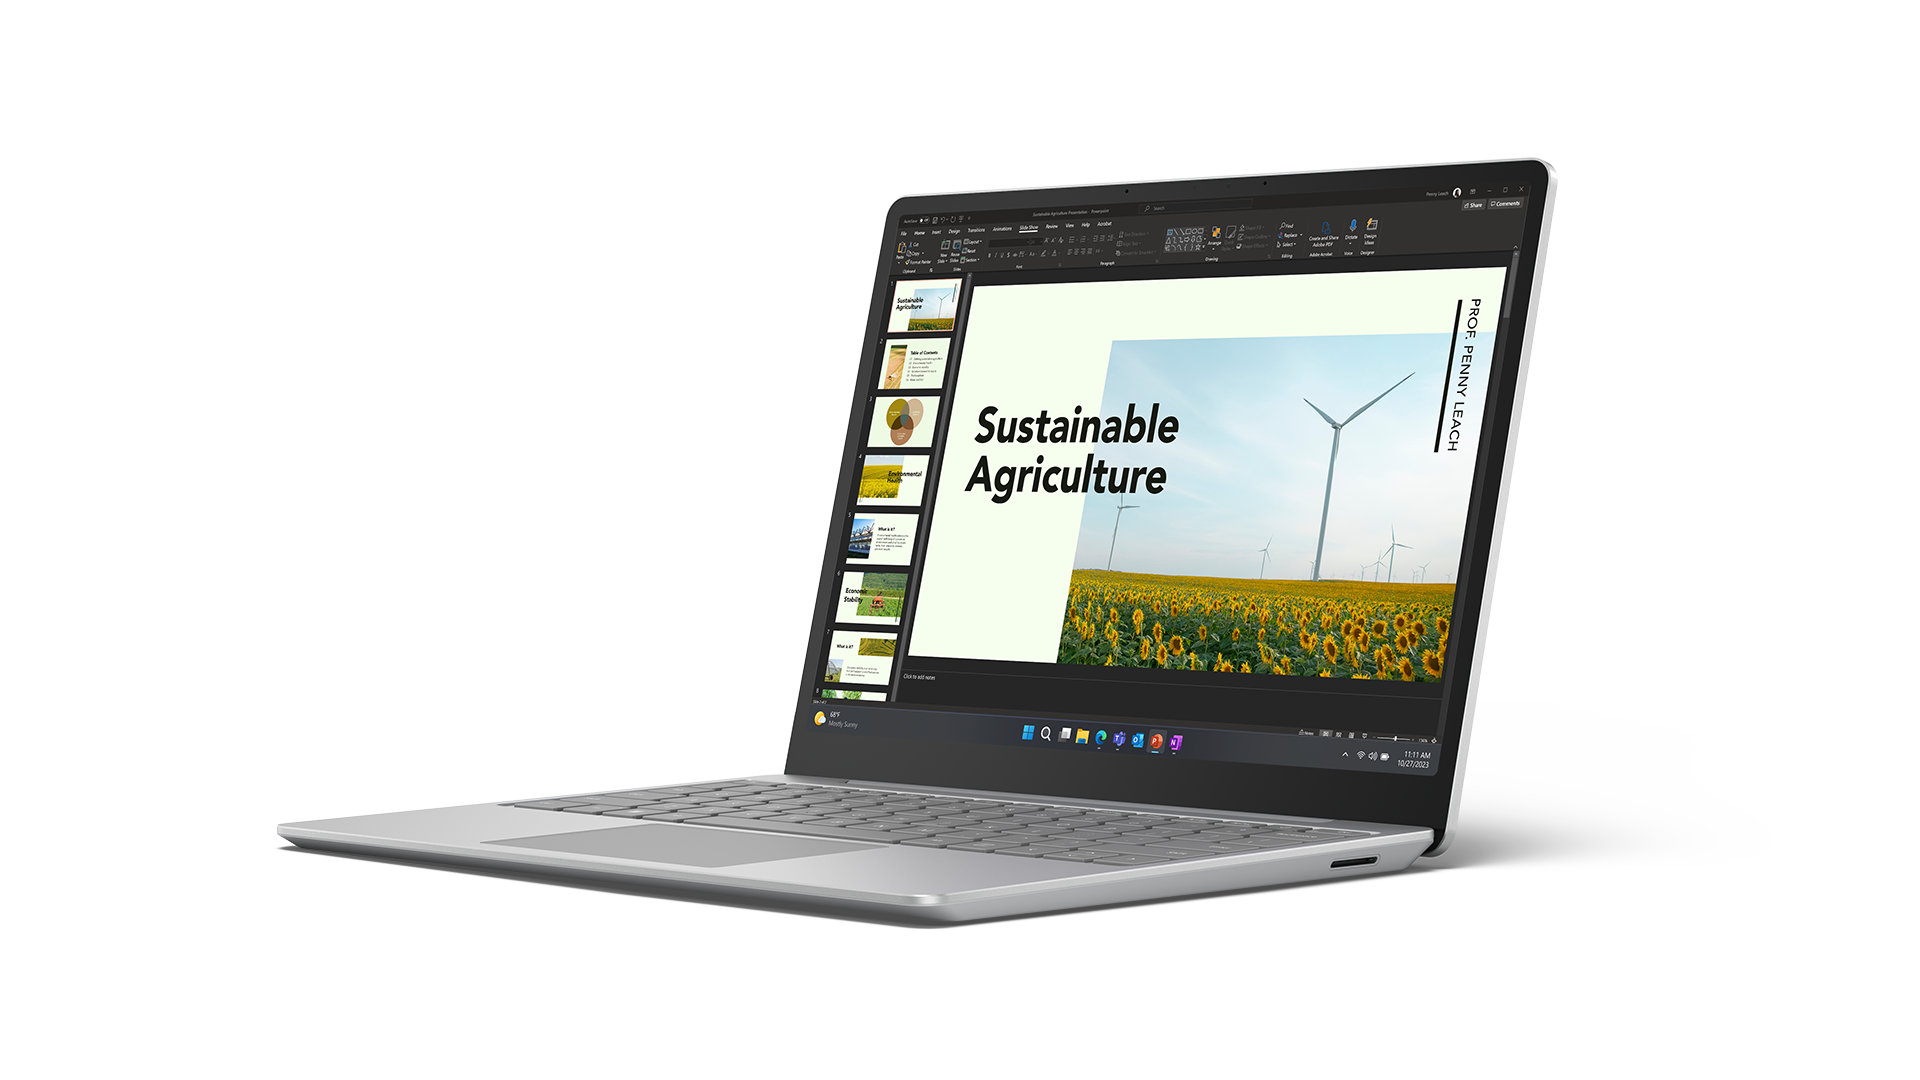  Microsoft Surface Laptop Go 3 (2023) - Laptop con pantalla  táctil de 12.4 pulgadas, delgada y ligera, Intel Core i5, 8 GB de RAM, SSD  SSD de 256 GB, con Windows 11, color arenisca : Electrónica